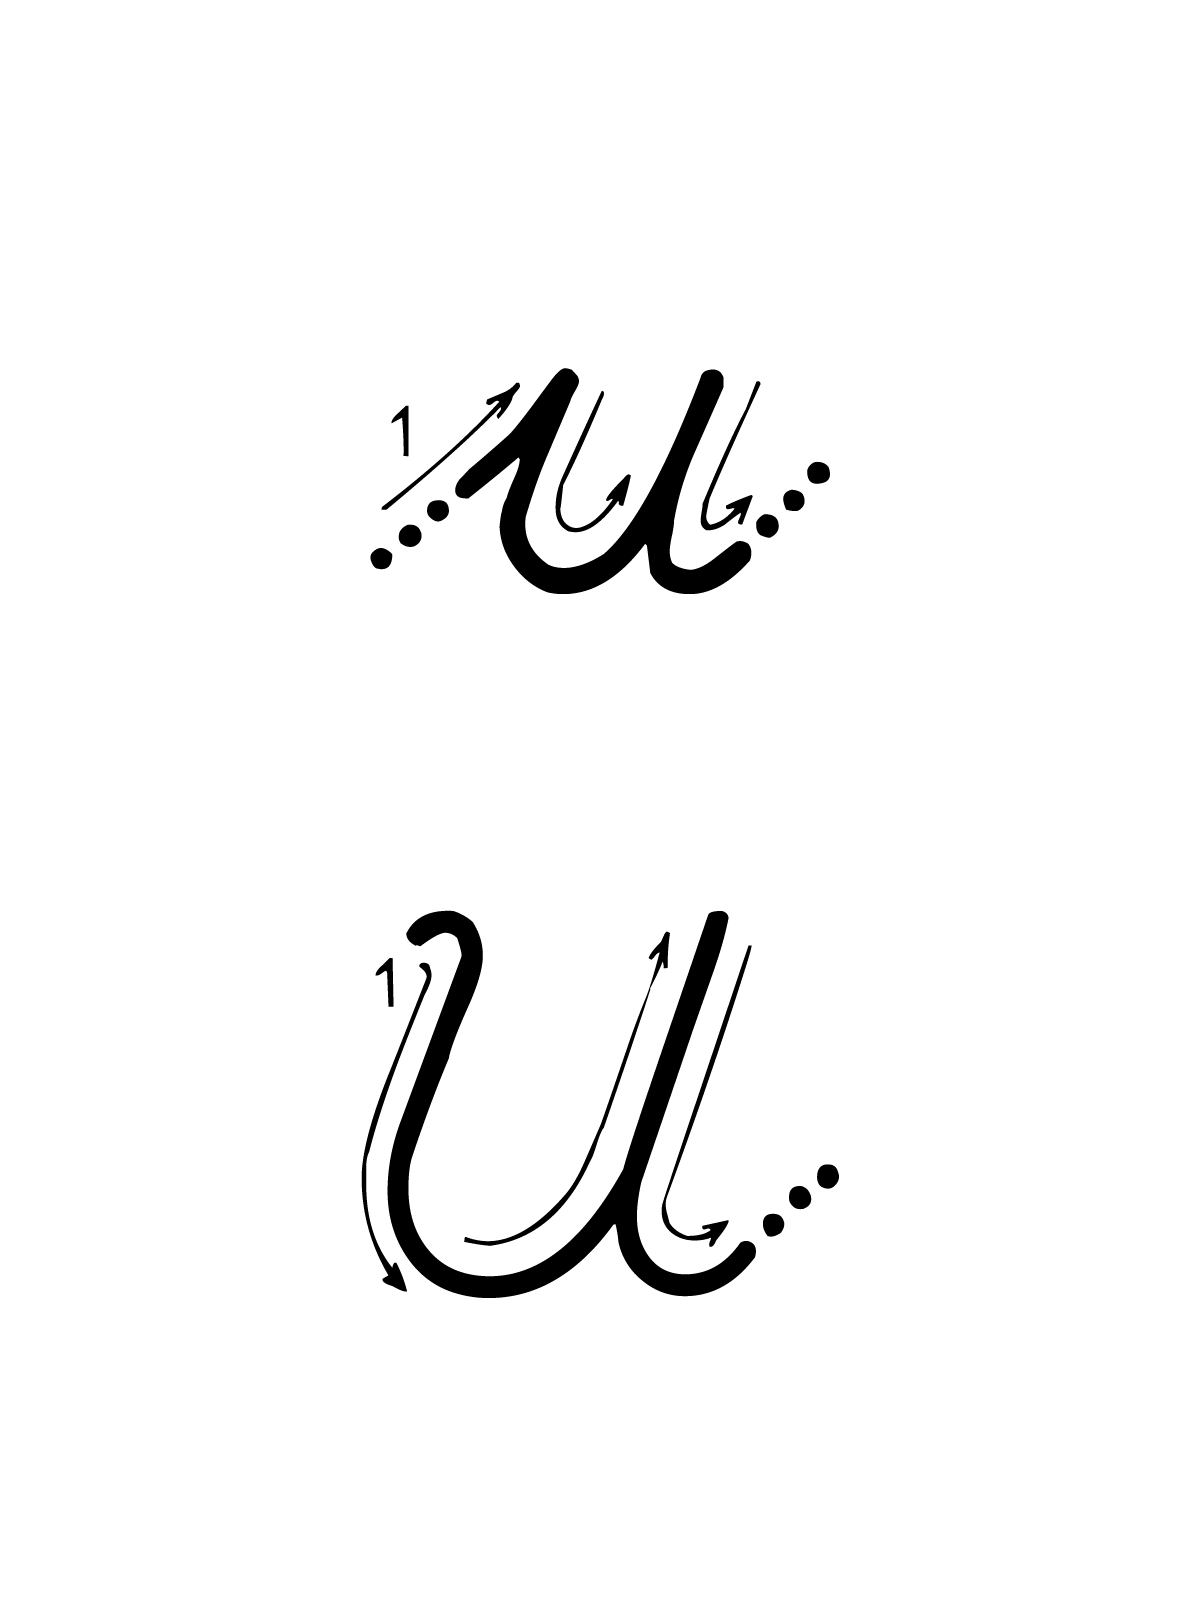 Lettere e numeri - Lettera U con indicazioni movimento corsivo maiuscolo e minuscolo